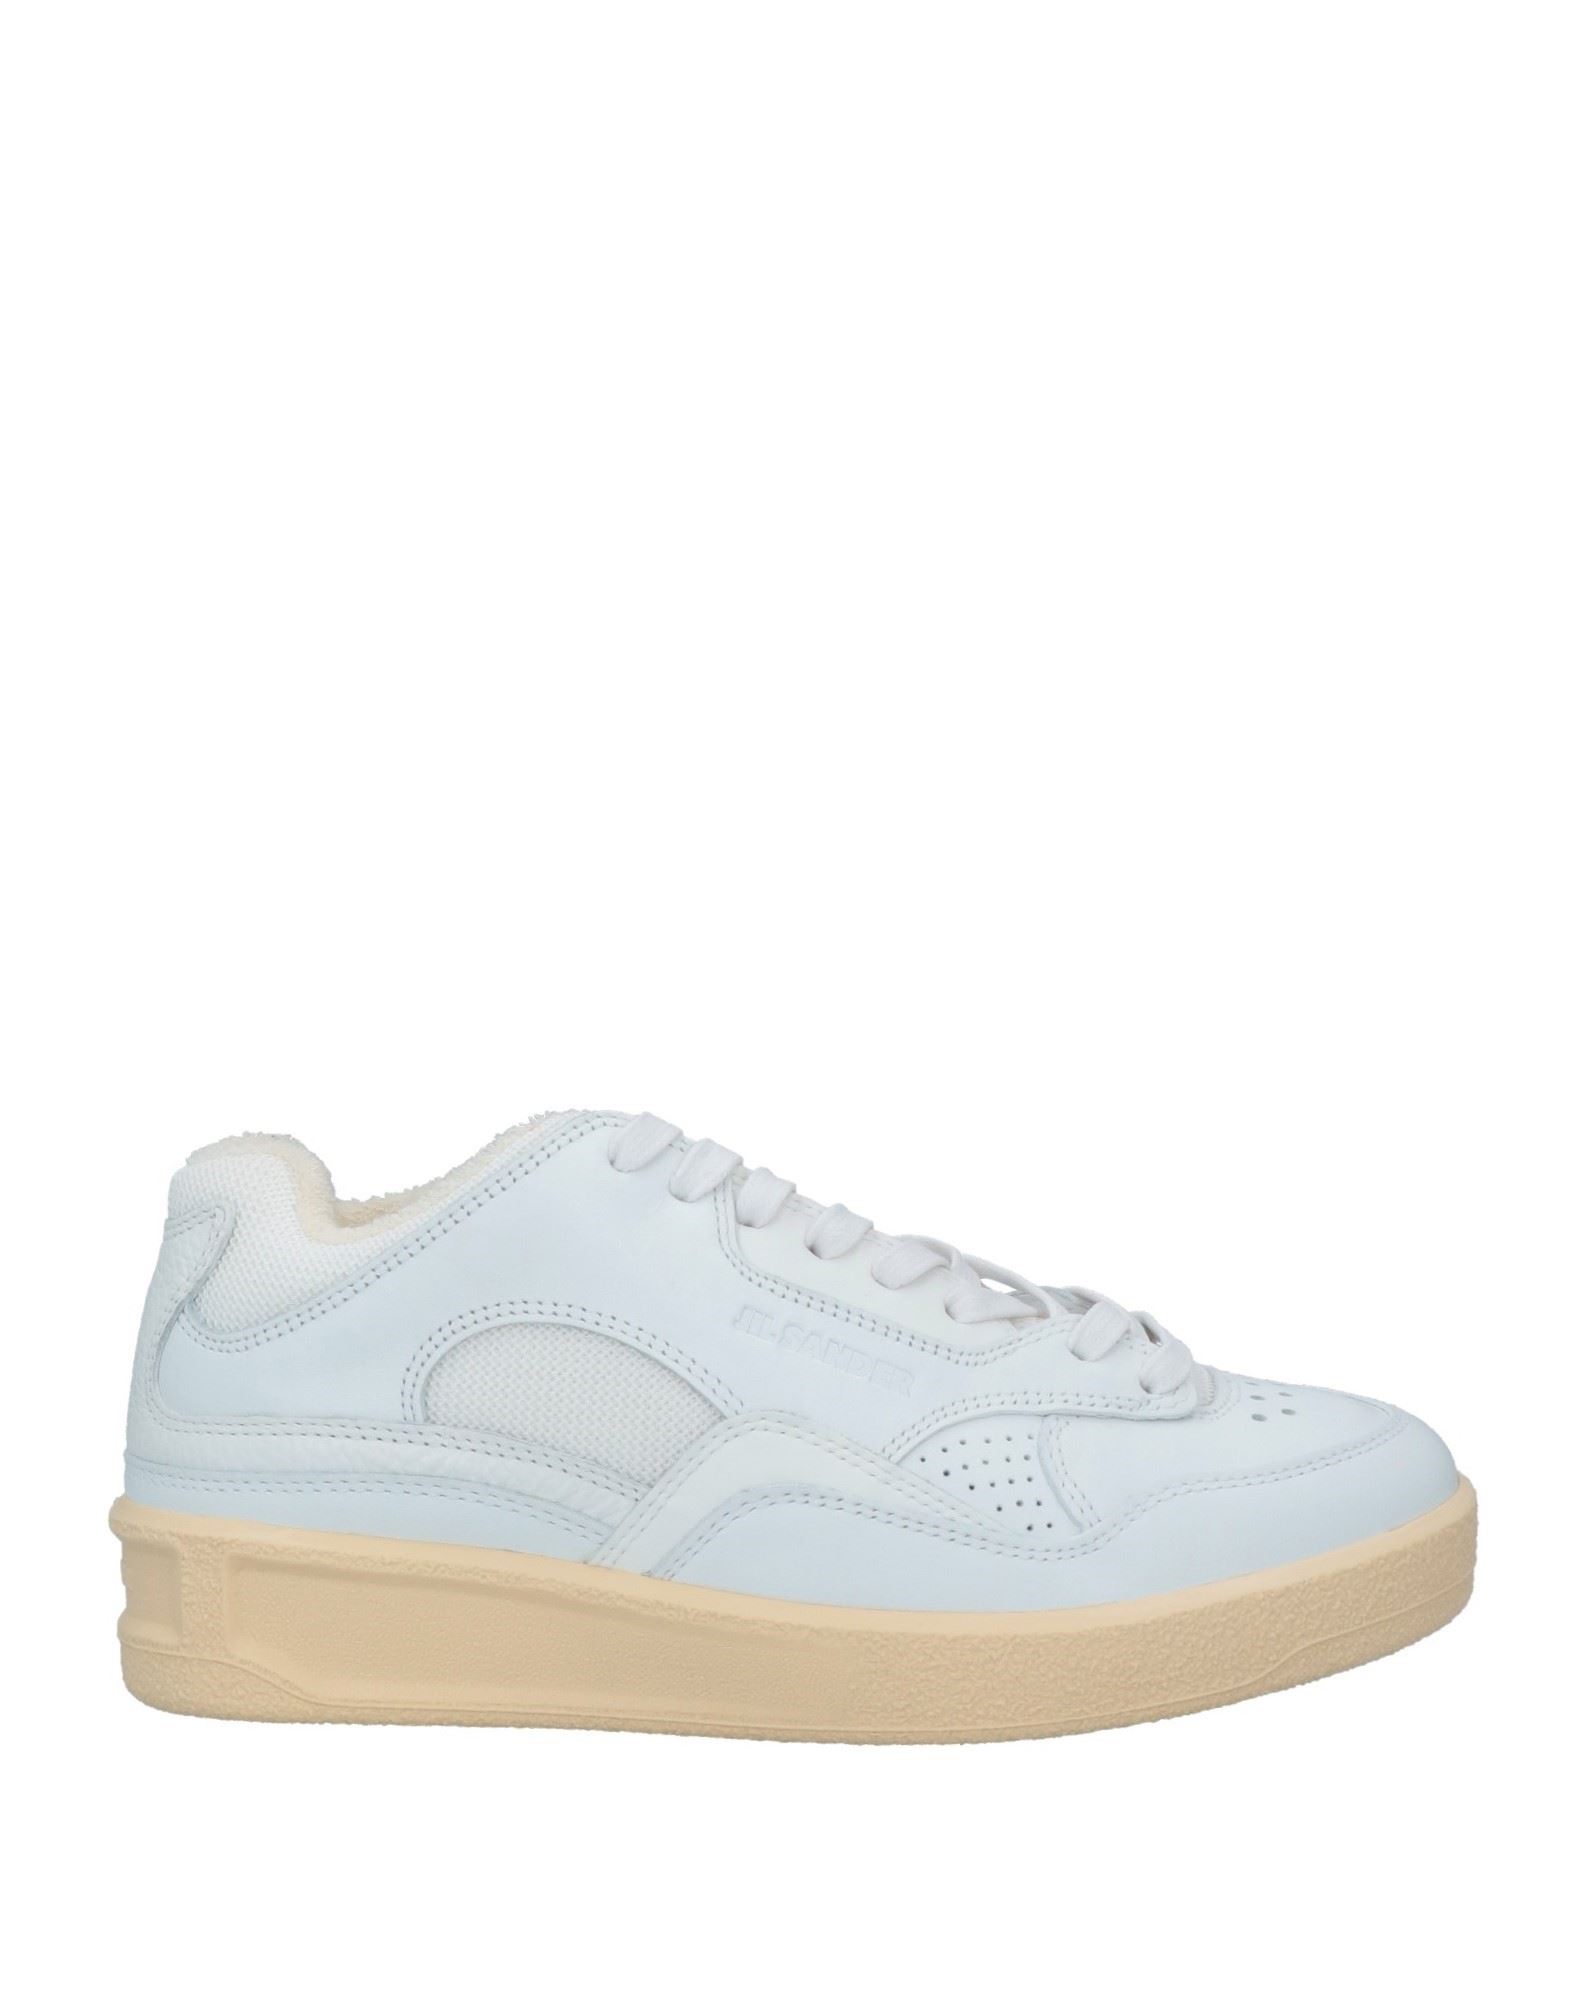 Shop Jil Sander Woman Sneakers White Size 8 Soft Leather